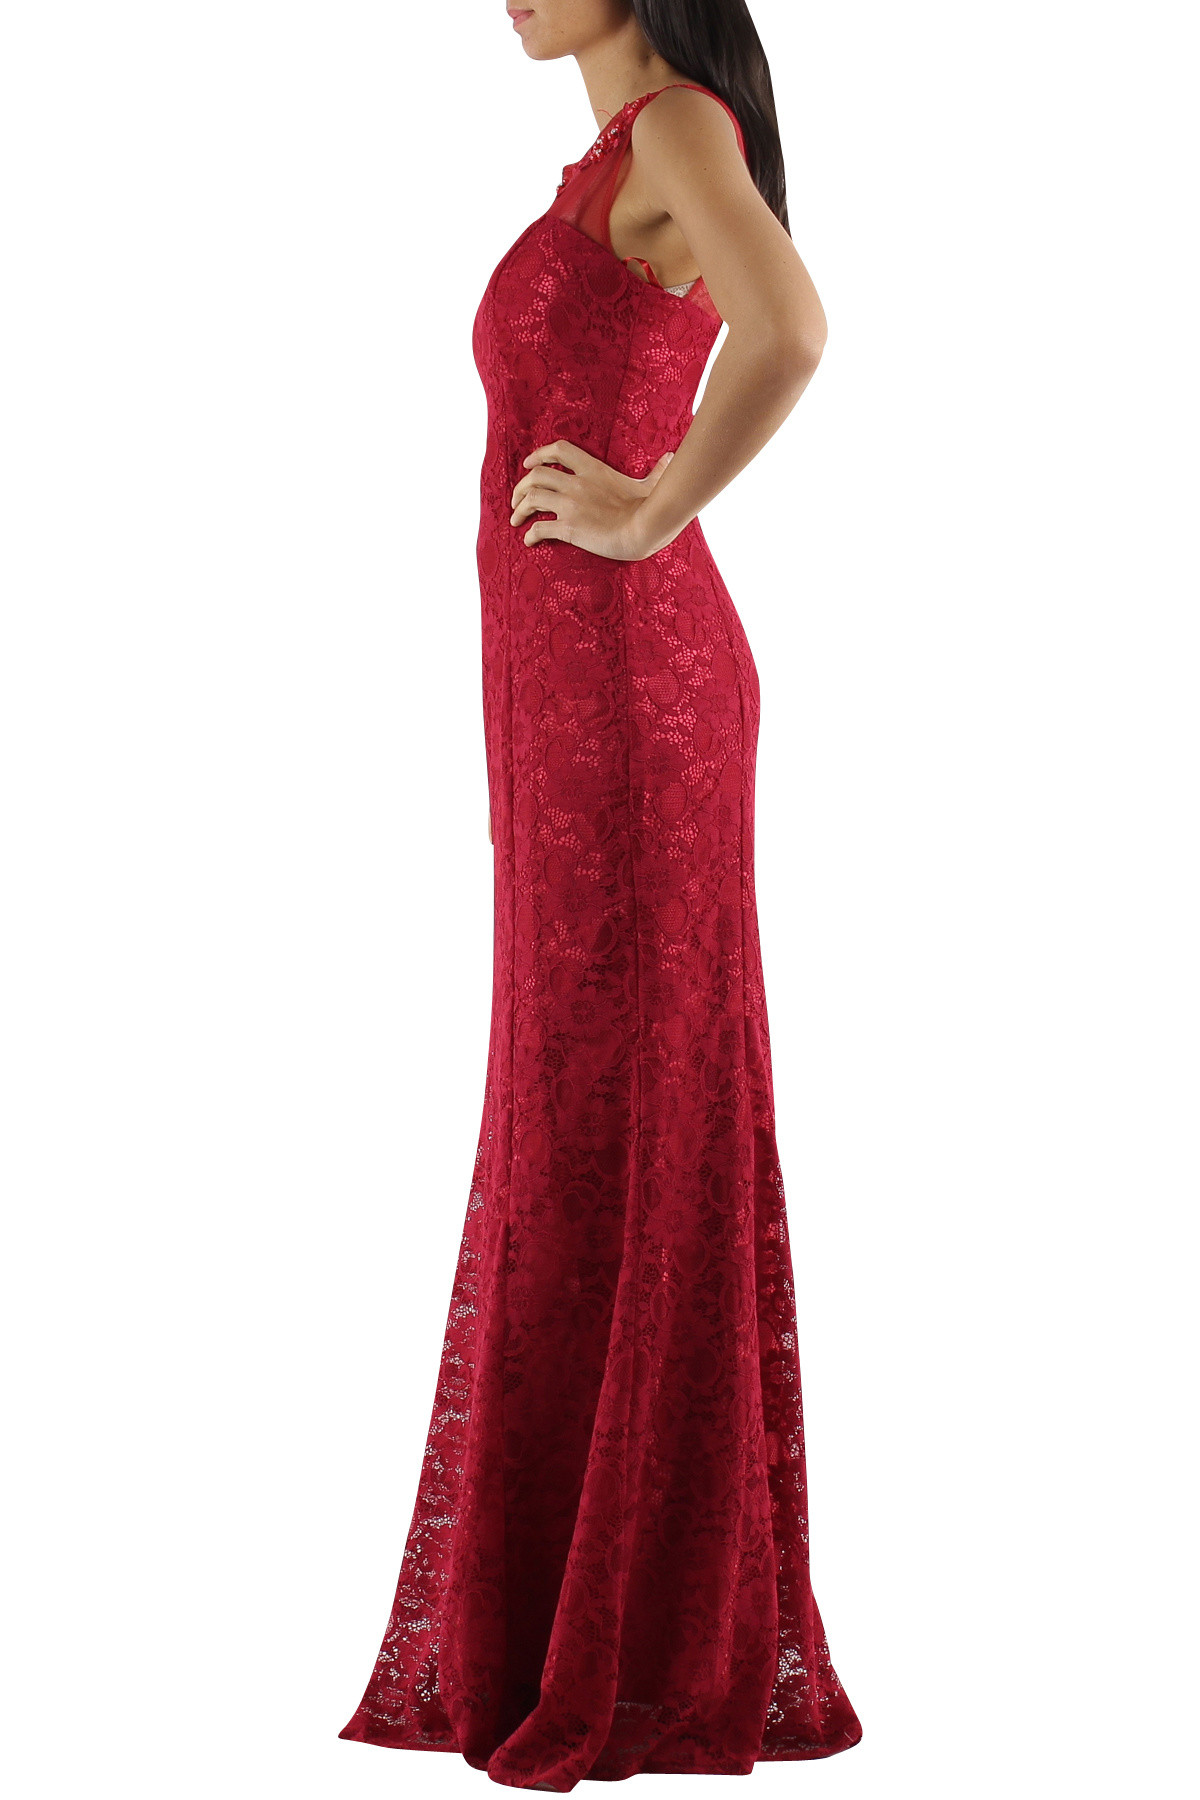 Společenské a plesové šaty krajkové F5067 červené - CHARM'S Paris XS